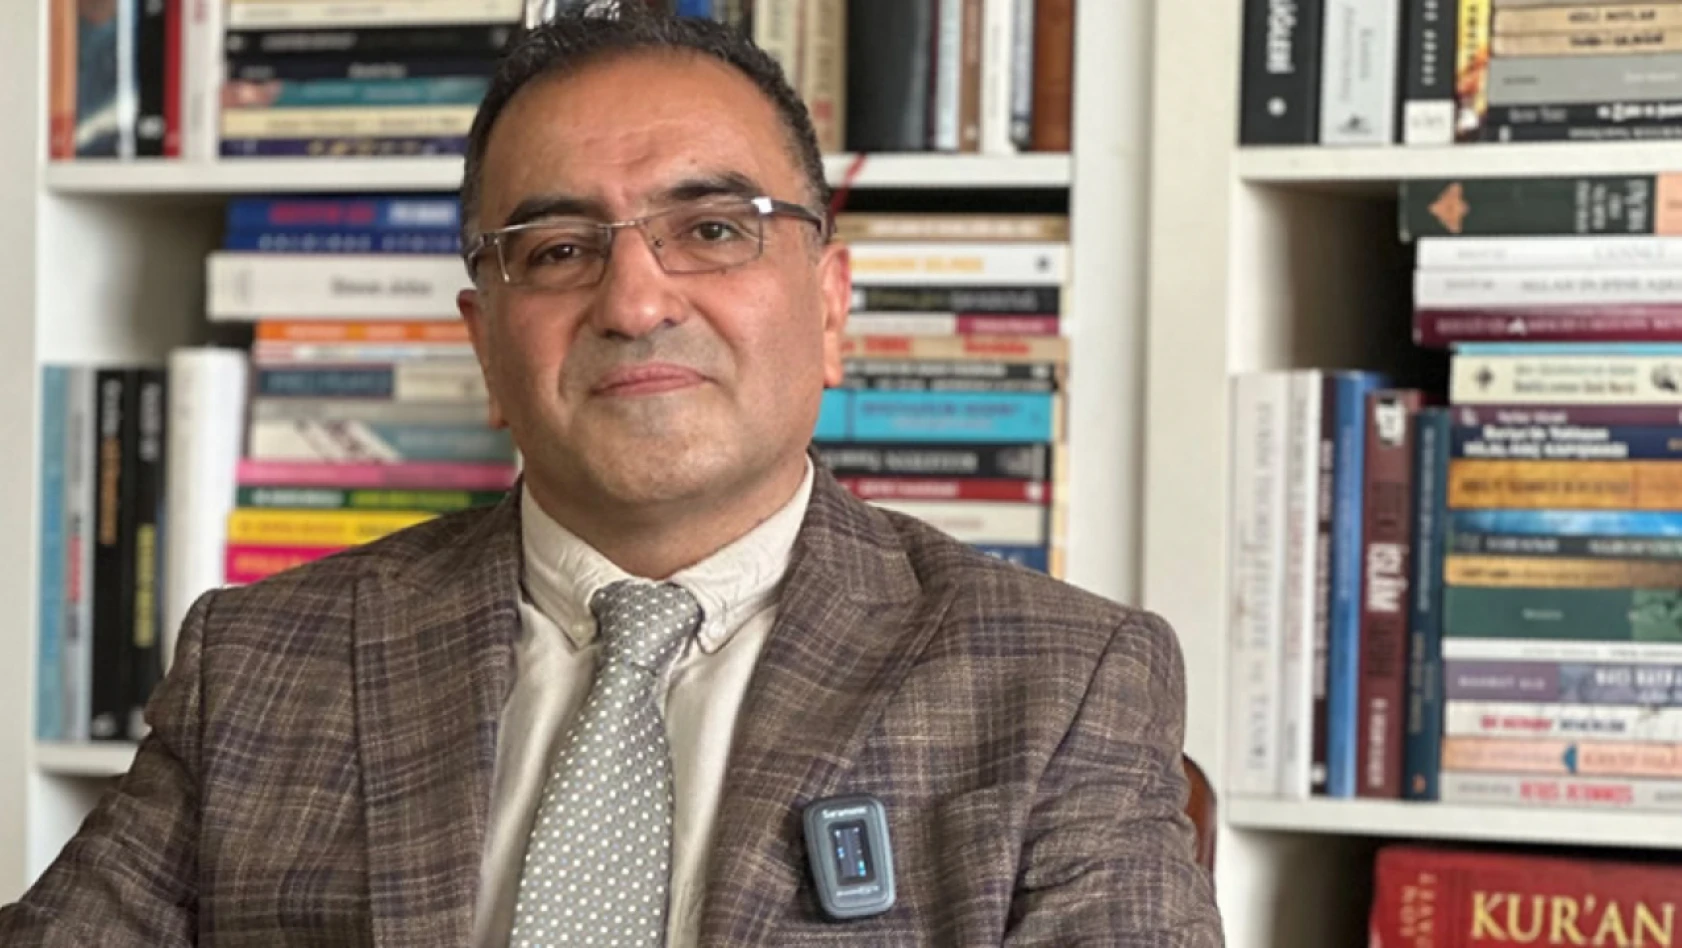 Dr. Kalan, İzmir Kitap Fuarı'nda sağlıklı yaşam ve beslenme hakkında konuşacak